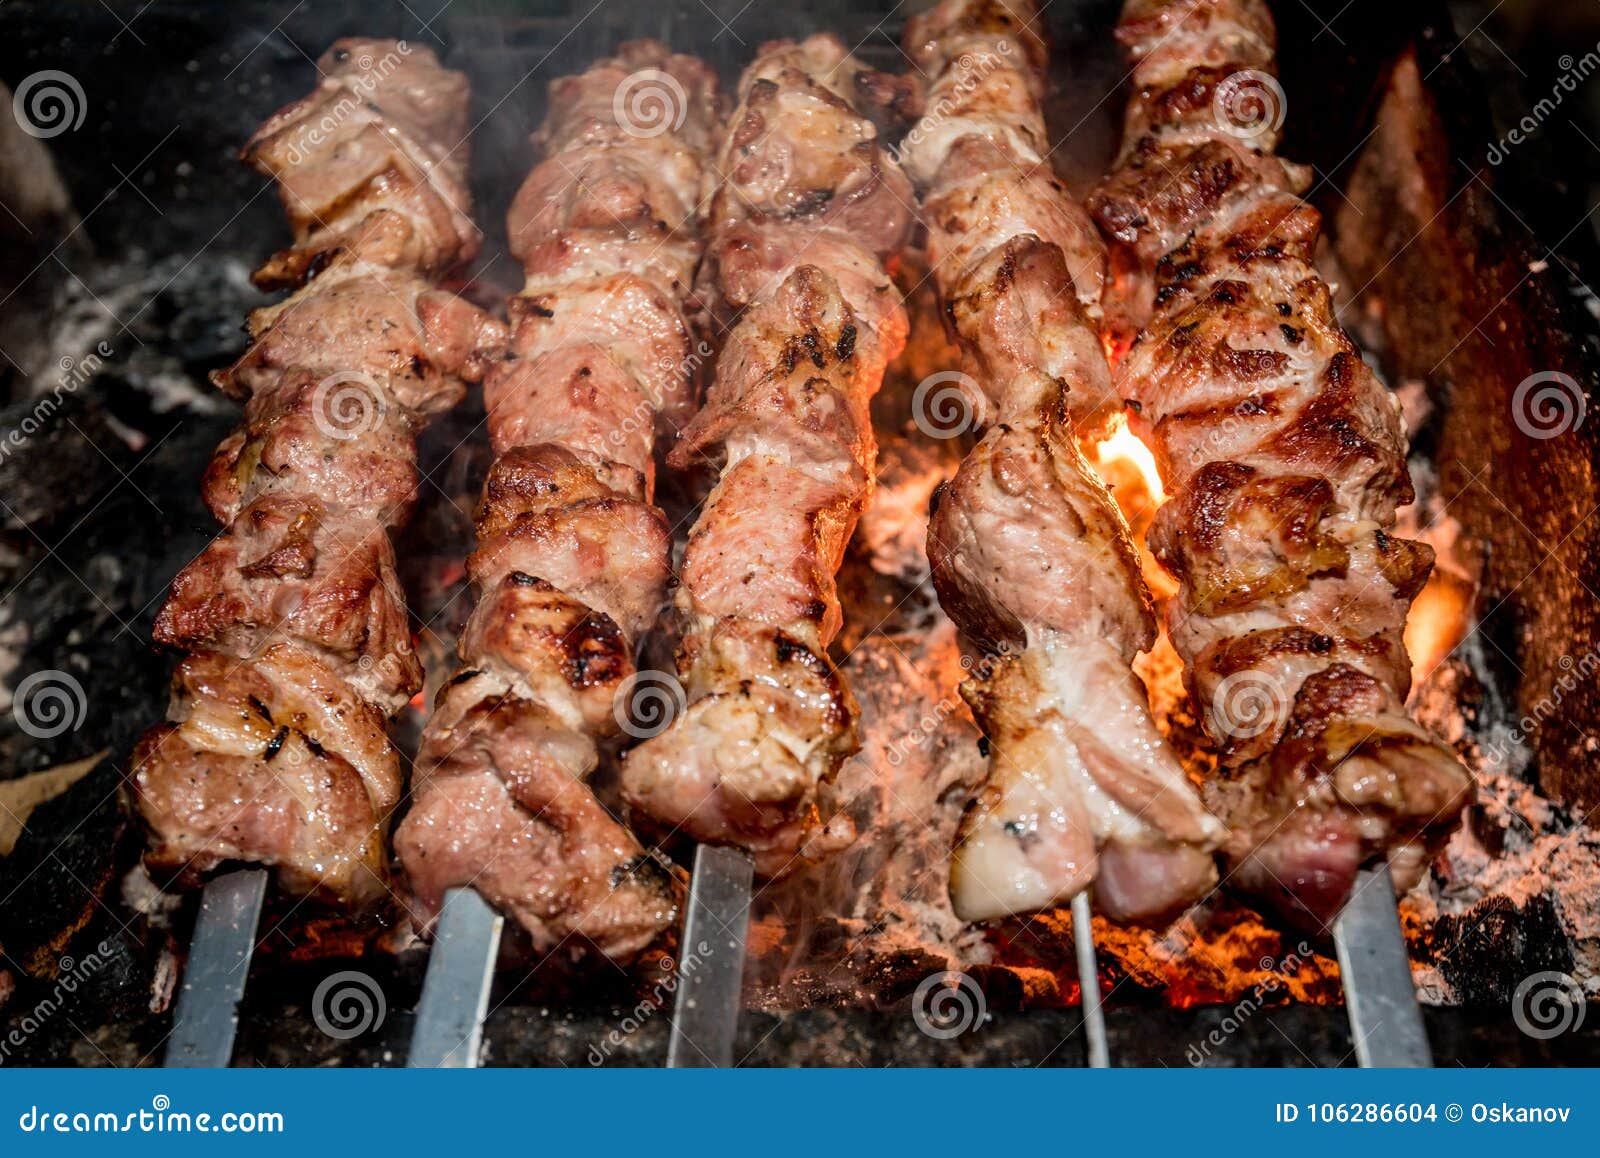 Preparing Shashlik on Mangal Stock Photo - Image of cook, meat: 106286604